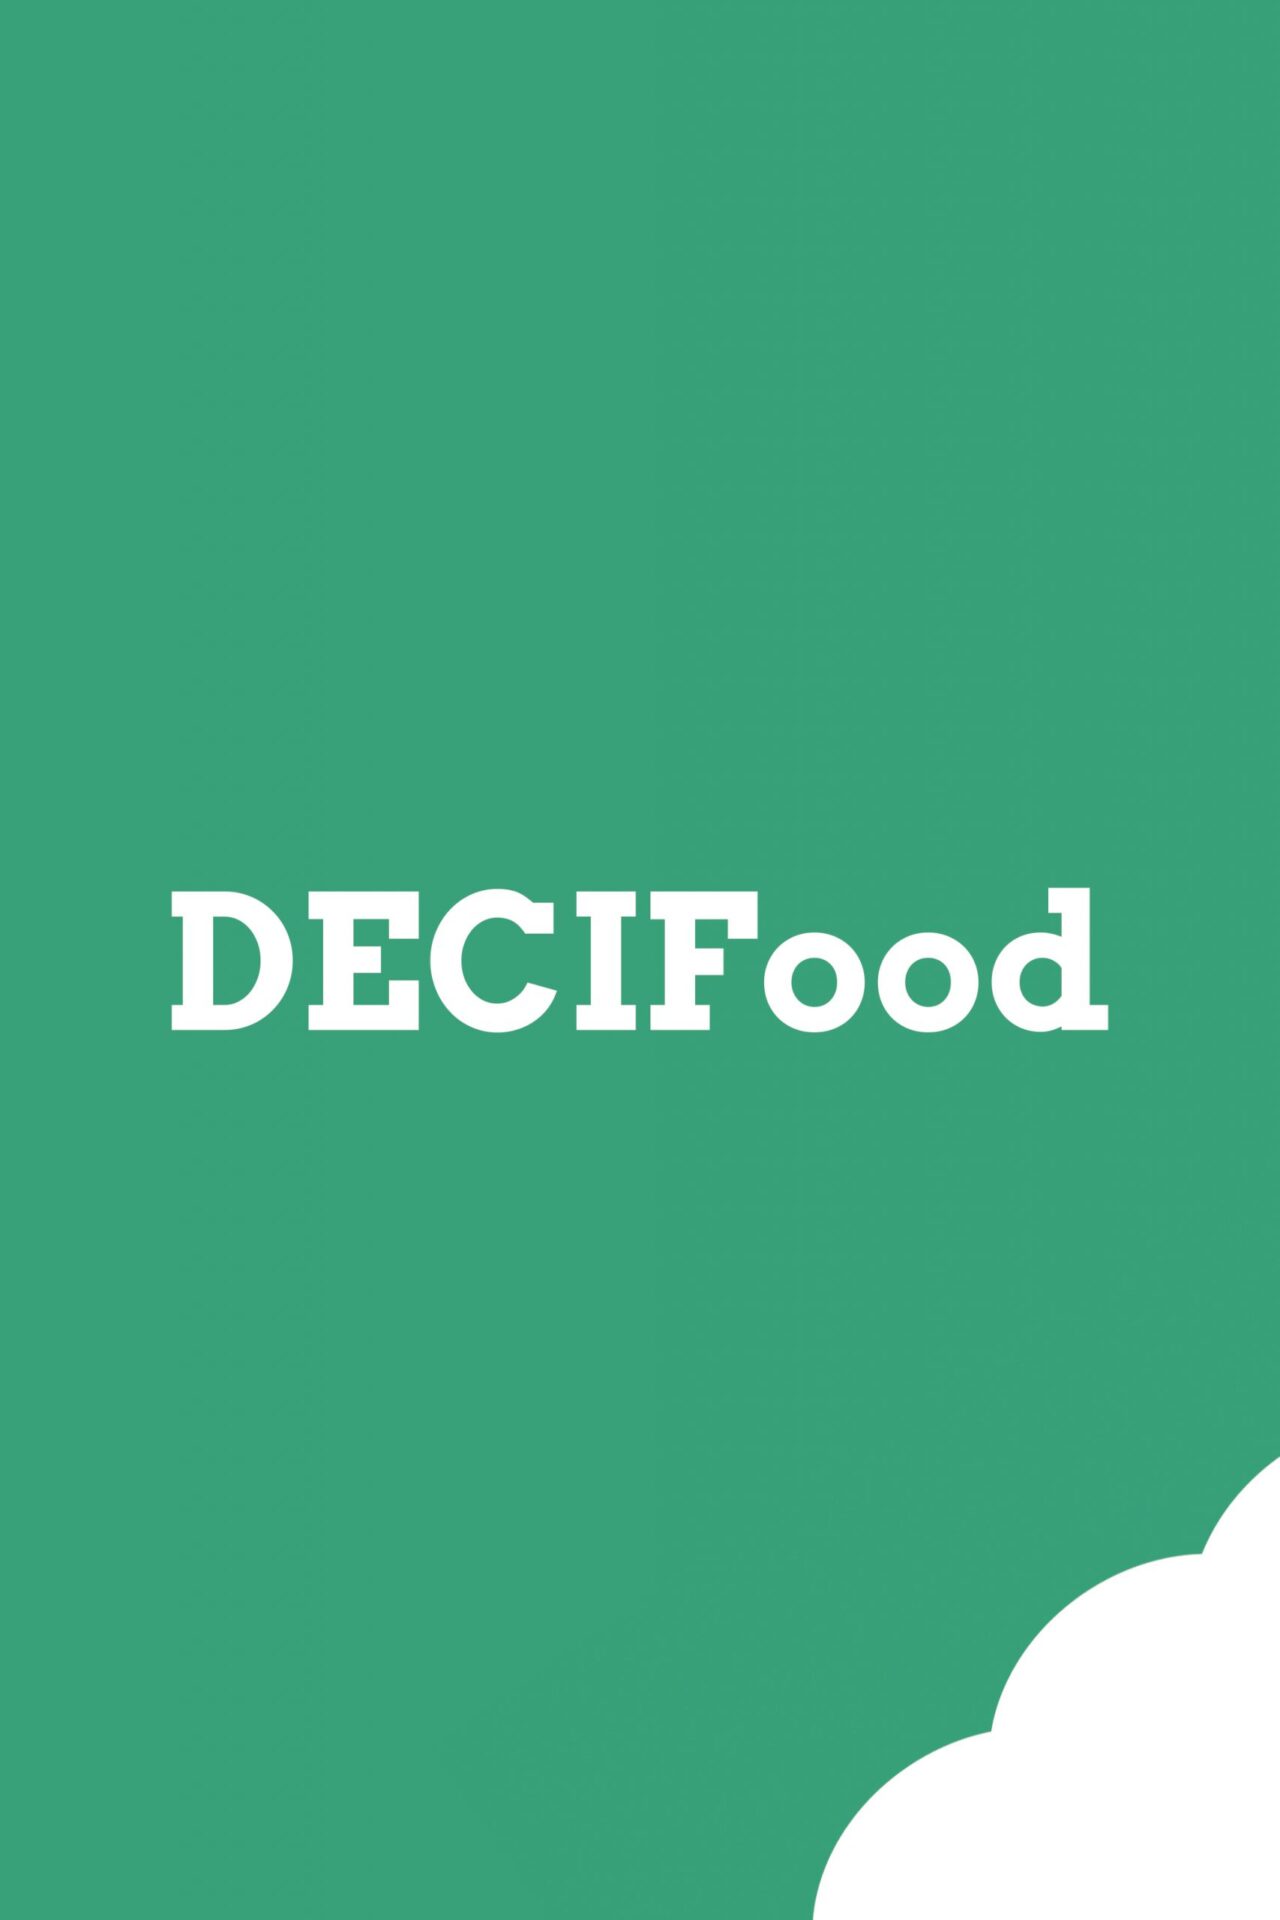 Decifood logo branding